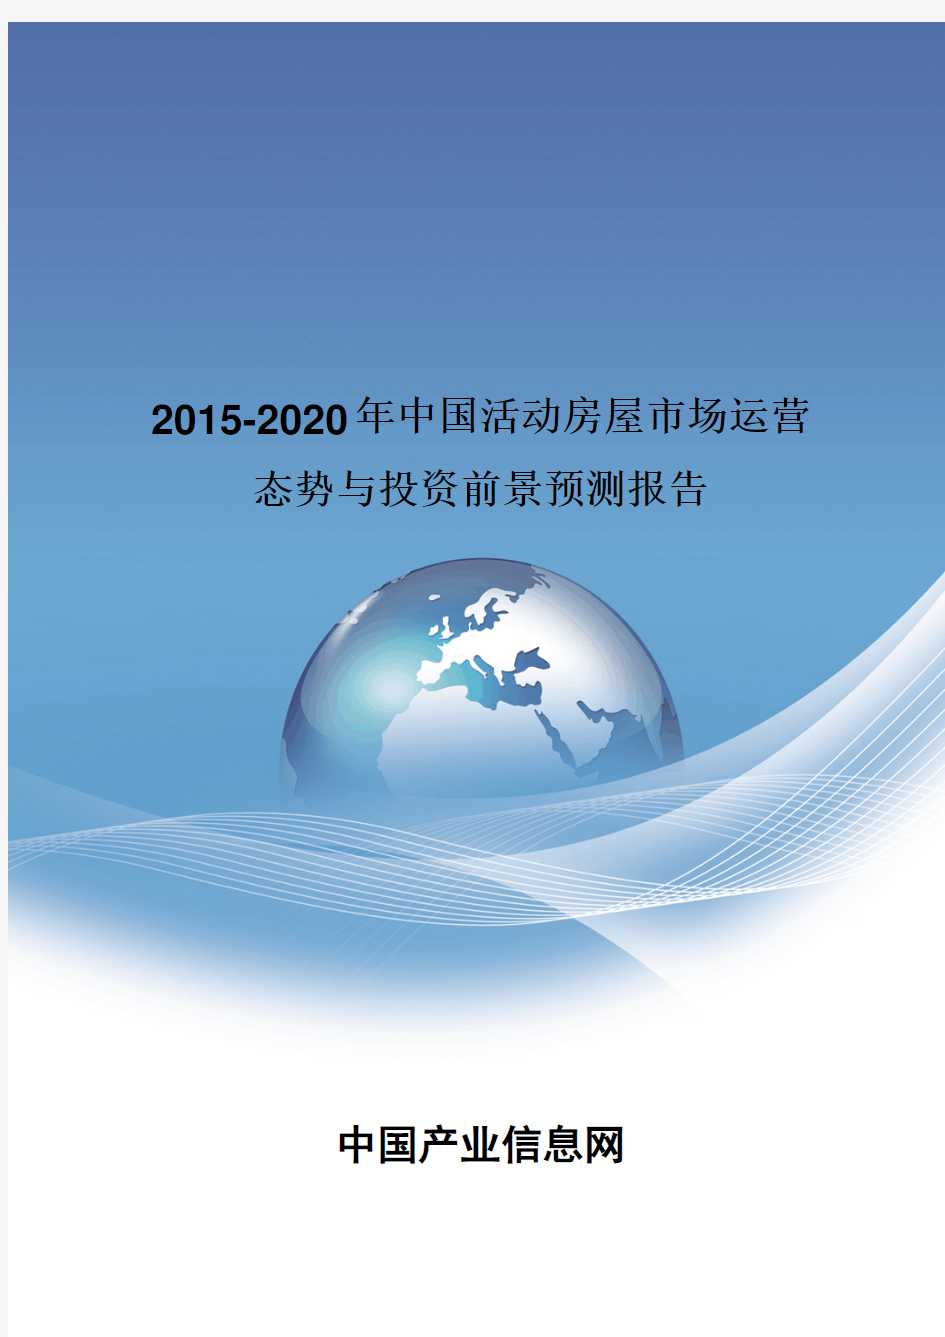 2015-2020年中国活动房屋市场运营态势报告